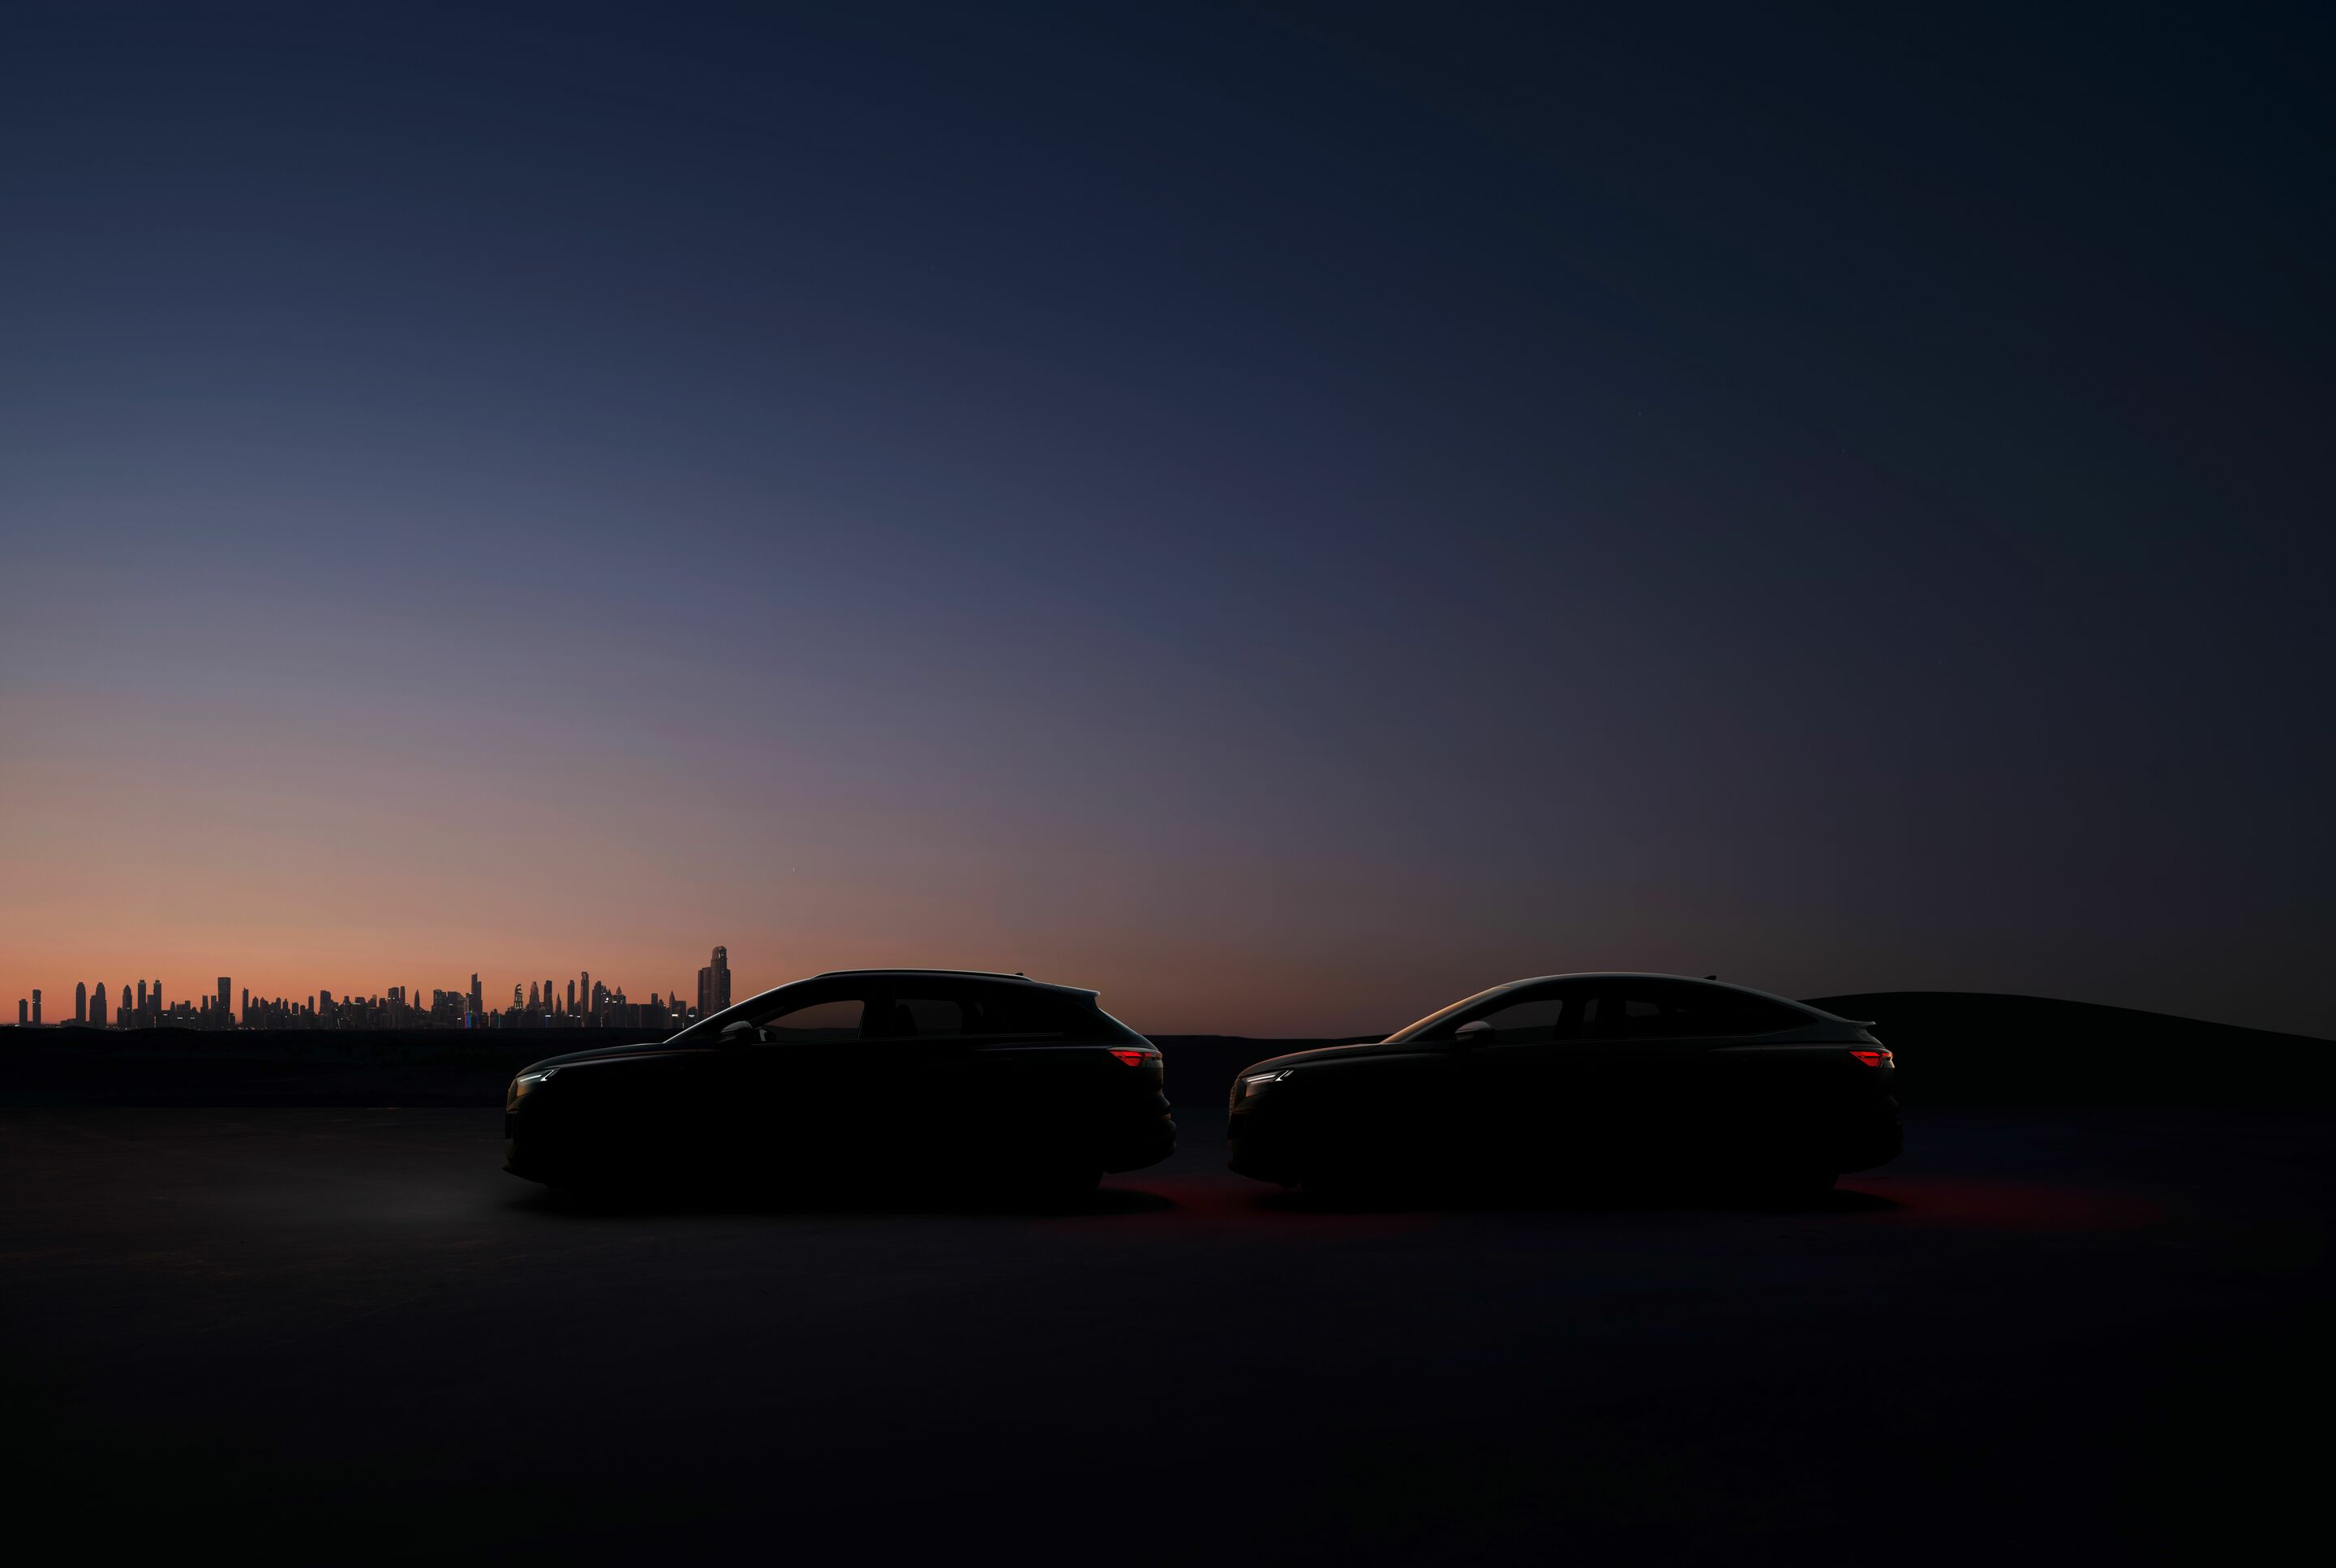 Dynamisch und hochkarätig: die Online-Weltpremiere des Audi e-tron GT